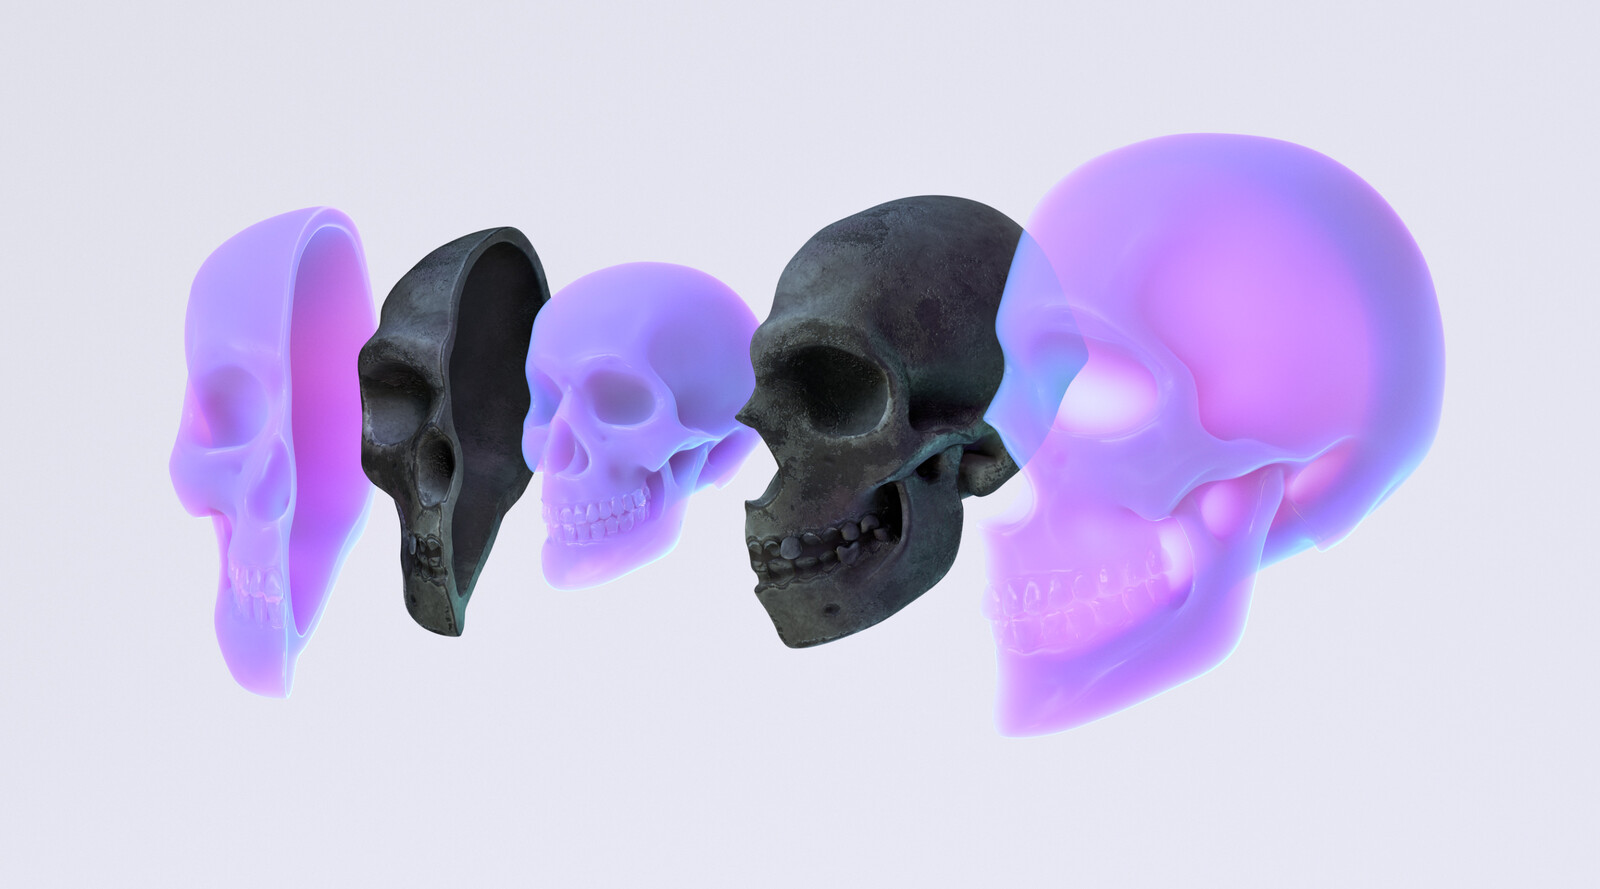 Skull Matryoshka • Science / Biology Illustration • 2019